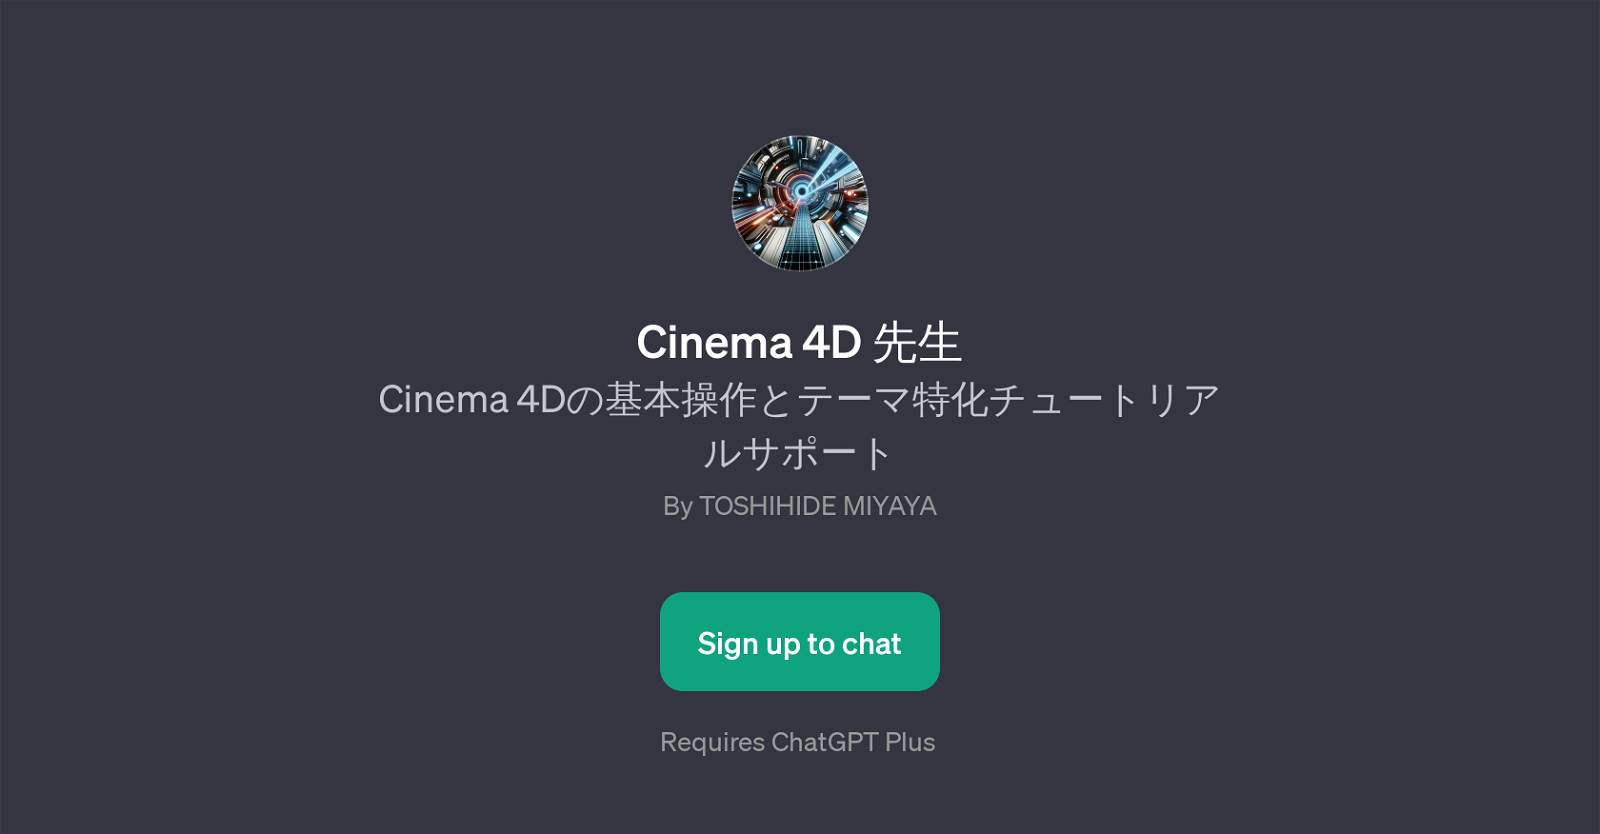 Cinema 4D website